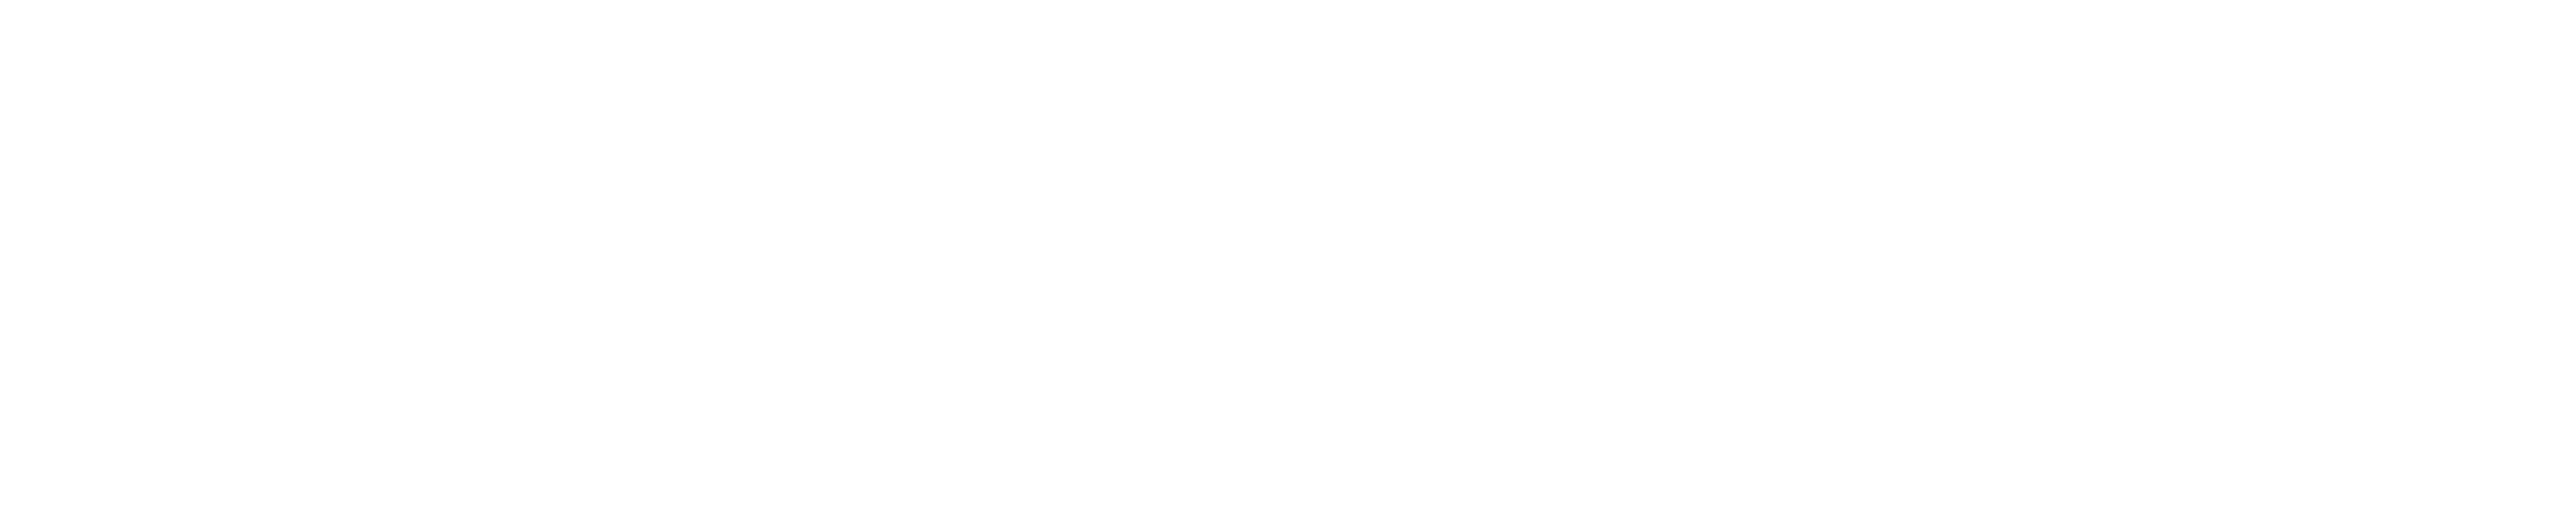 Marketing Moves Logo x 3